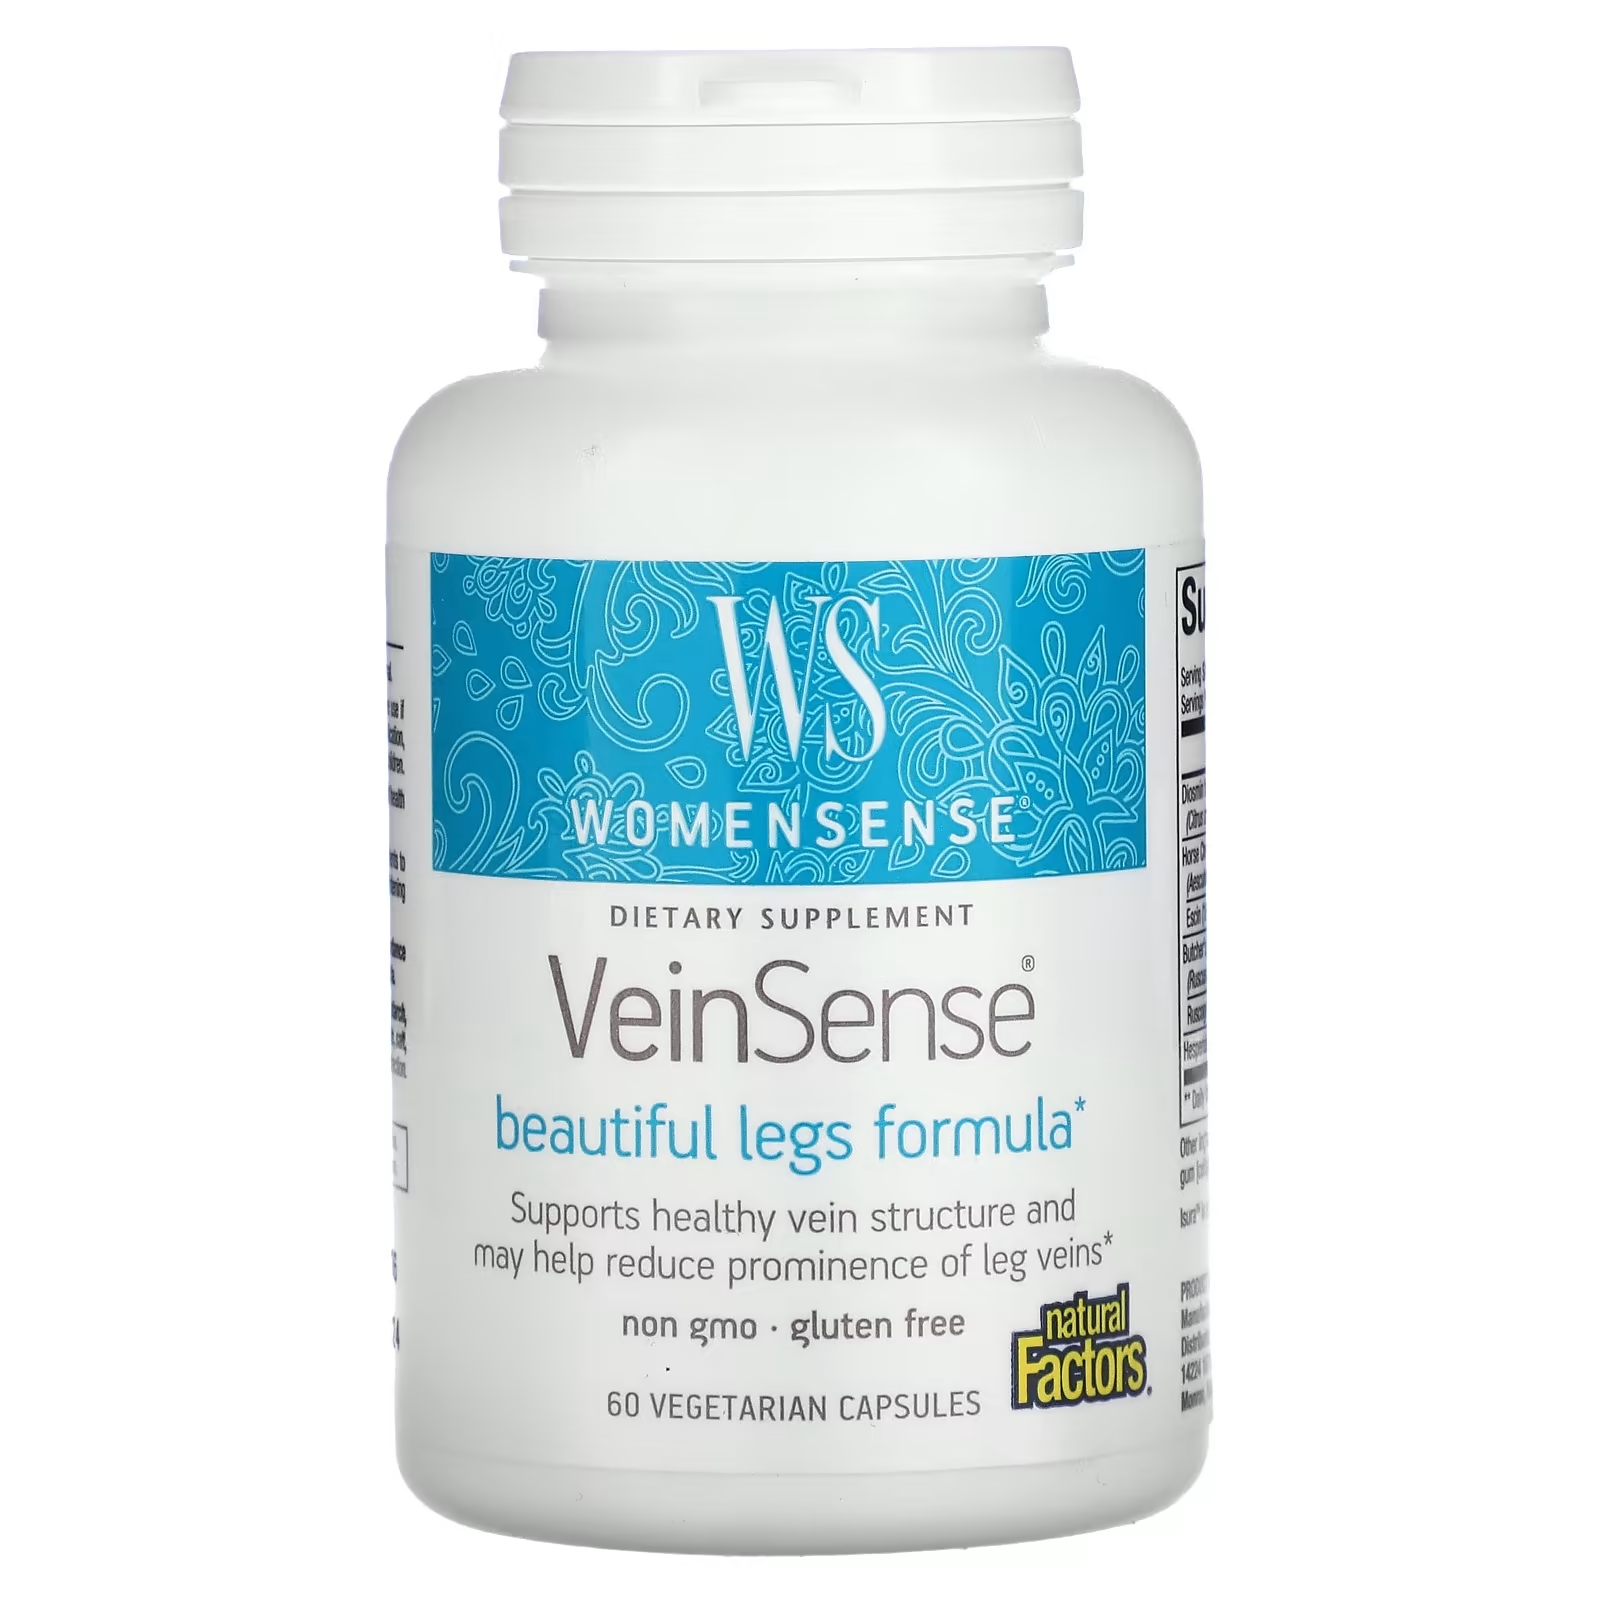 natural factors womensense bladdersense 90 вегетарианских капсул Natural Factors WomenSense VeinSense, 60 вегетарианских капсул